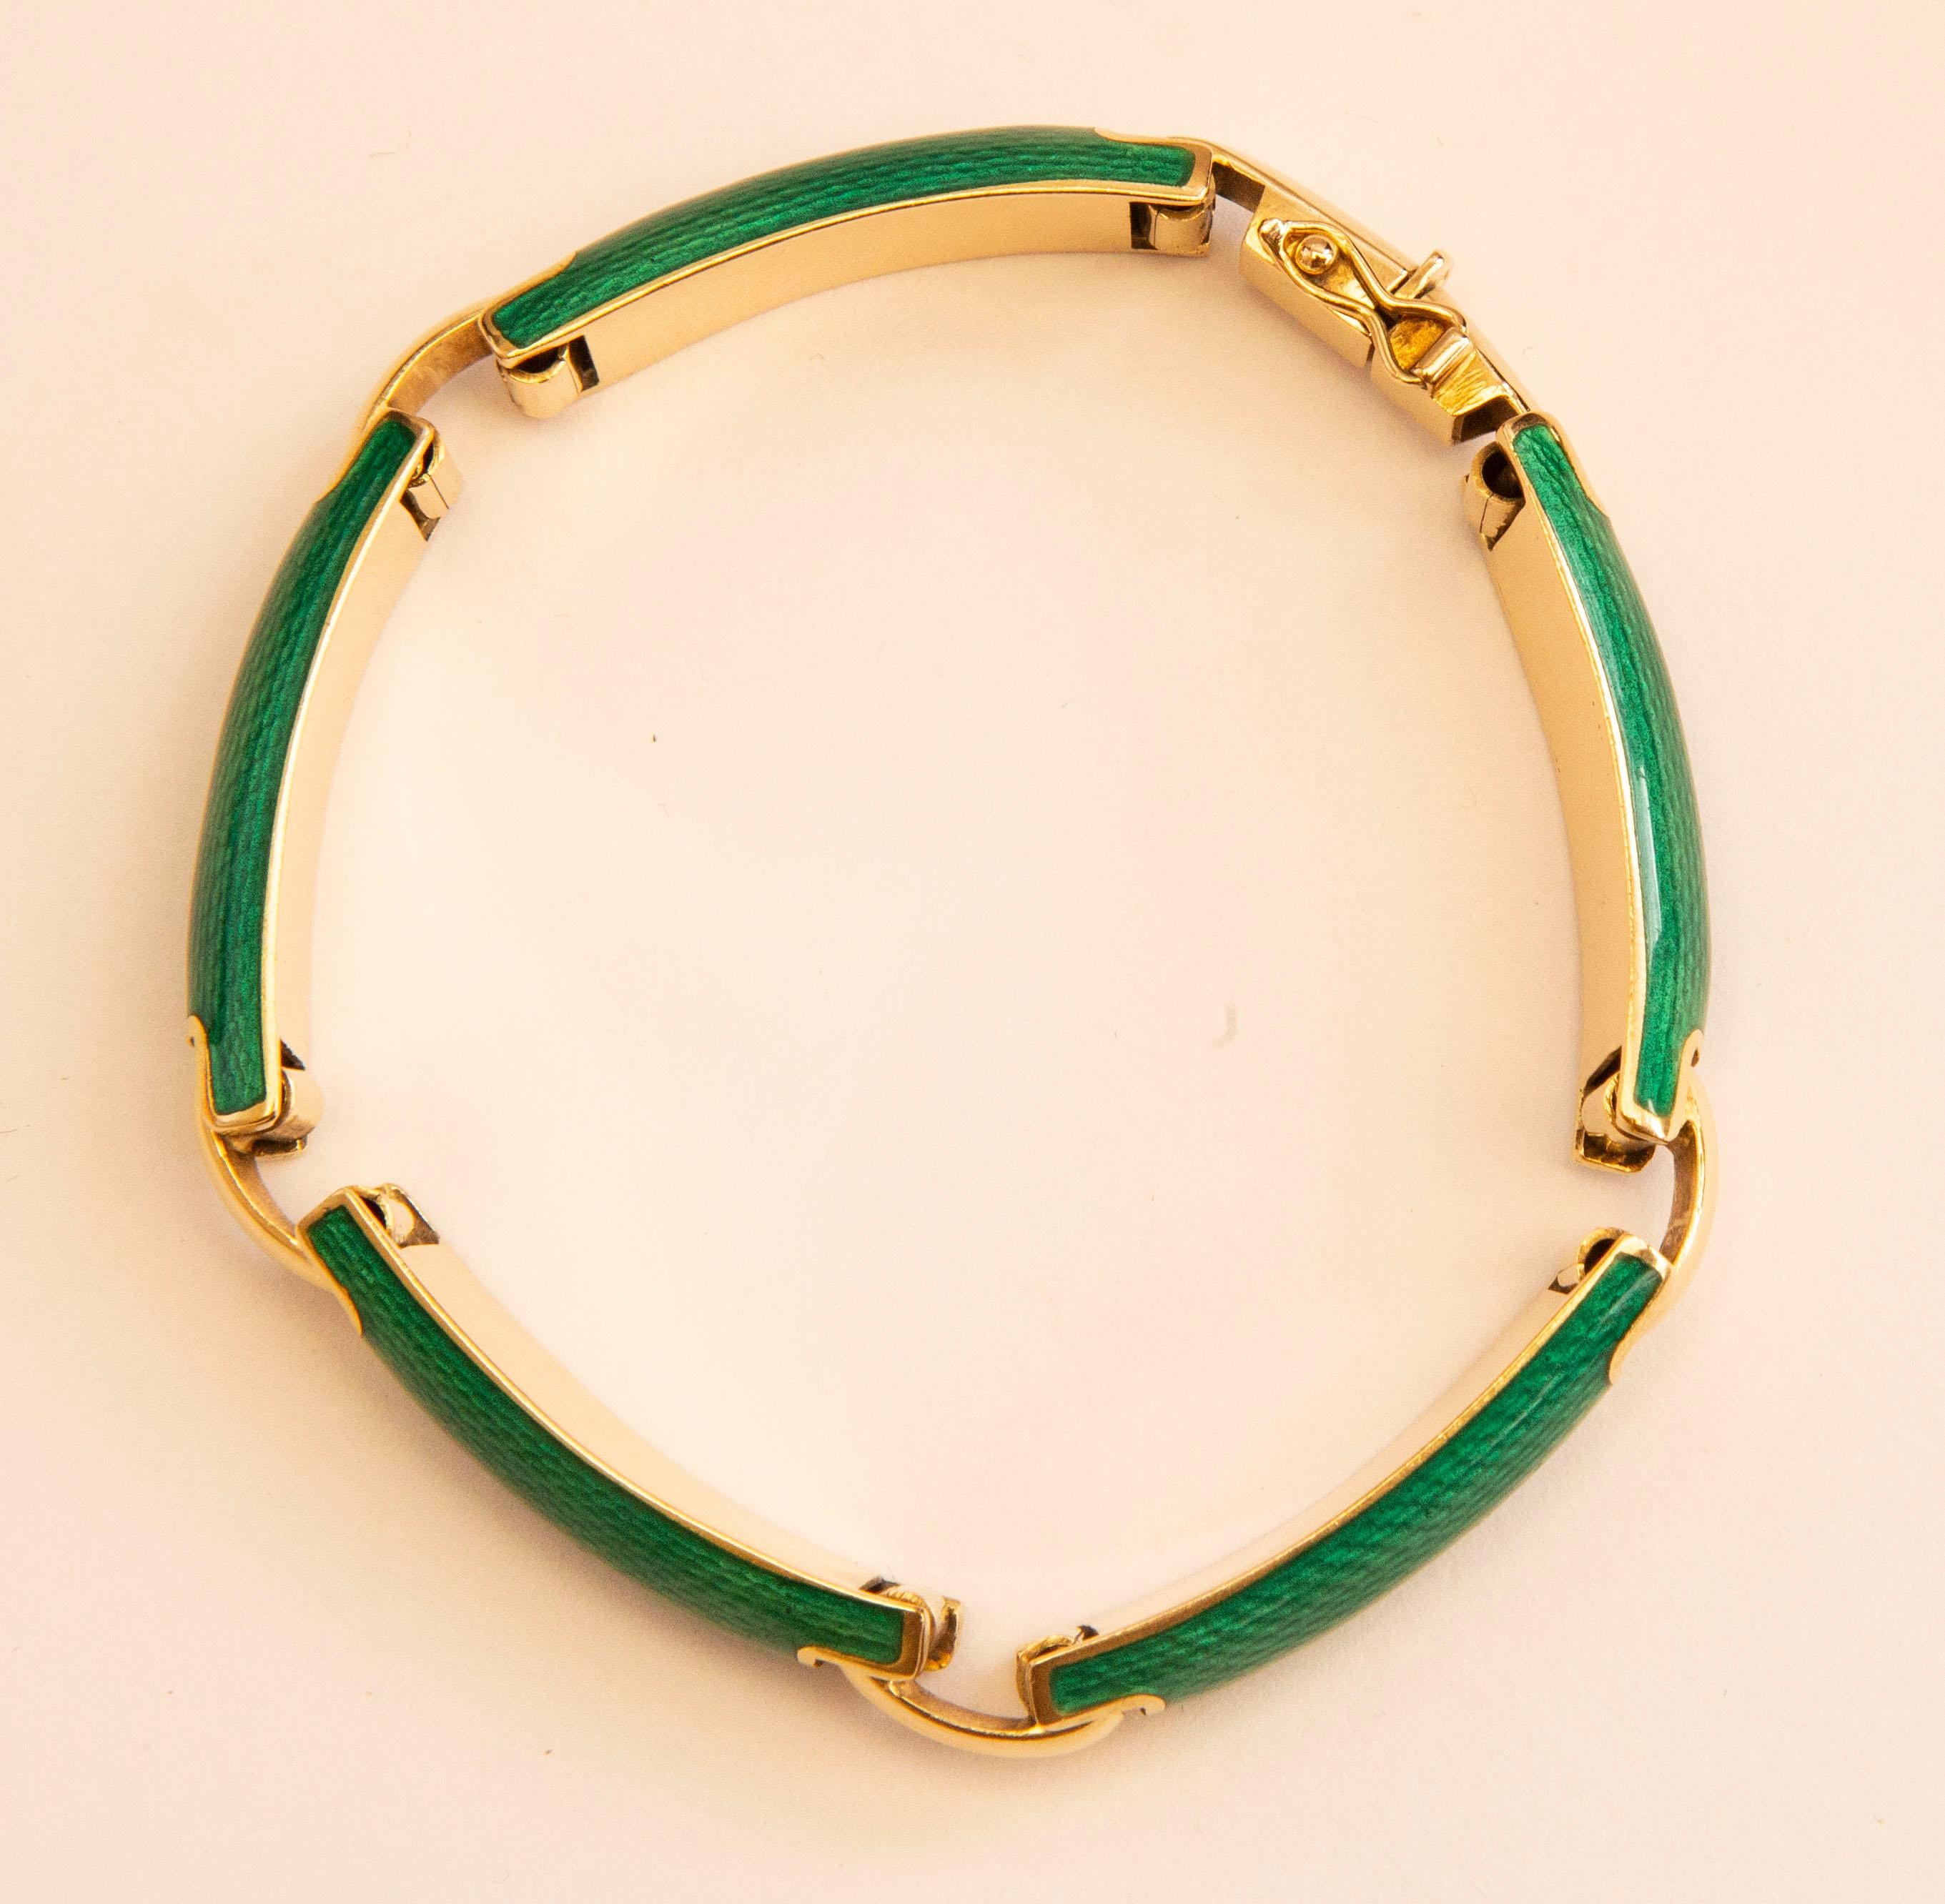 Un bracelet vintage italien en or jaune 18 carats avec des maillons en émail vert vibrant imprimé reptile. Les maillons sont reliés par des barres en forme de demi-lune. Il est doté d'un fermoir et d'une serrure de sécurité pour votre sécurité.
Le